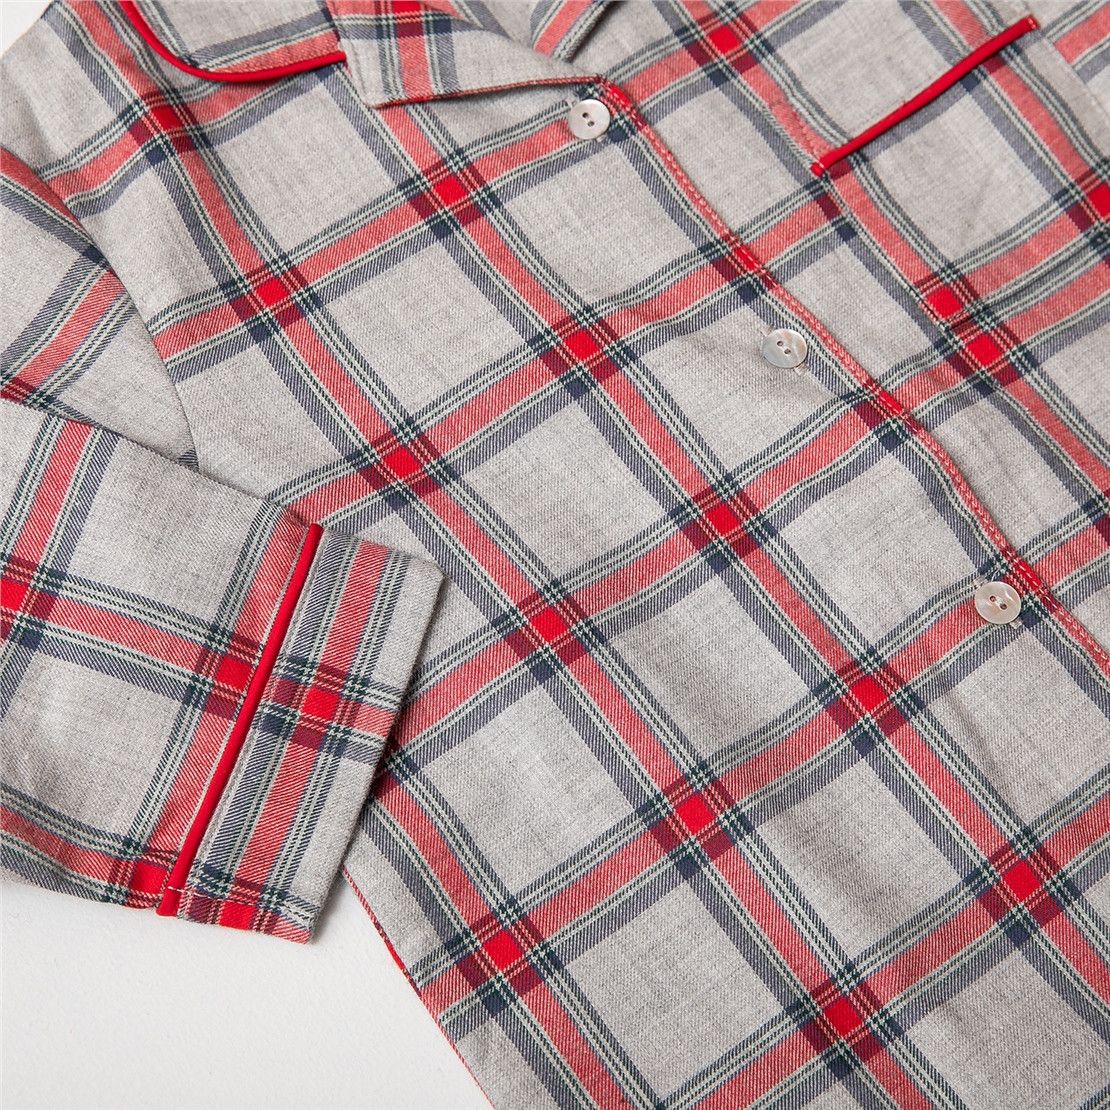 Новорічна дитяча піжама-сорочка для дівчинки GIFT в червону клітку 1-2, 3-4 роки